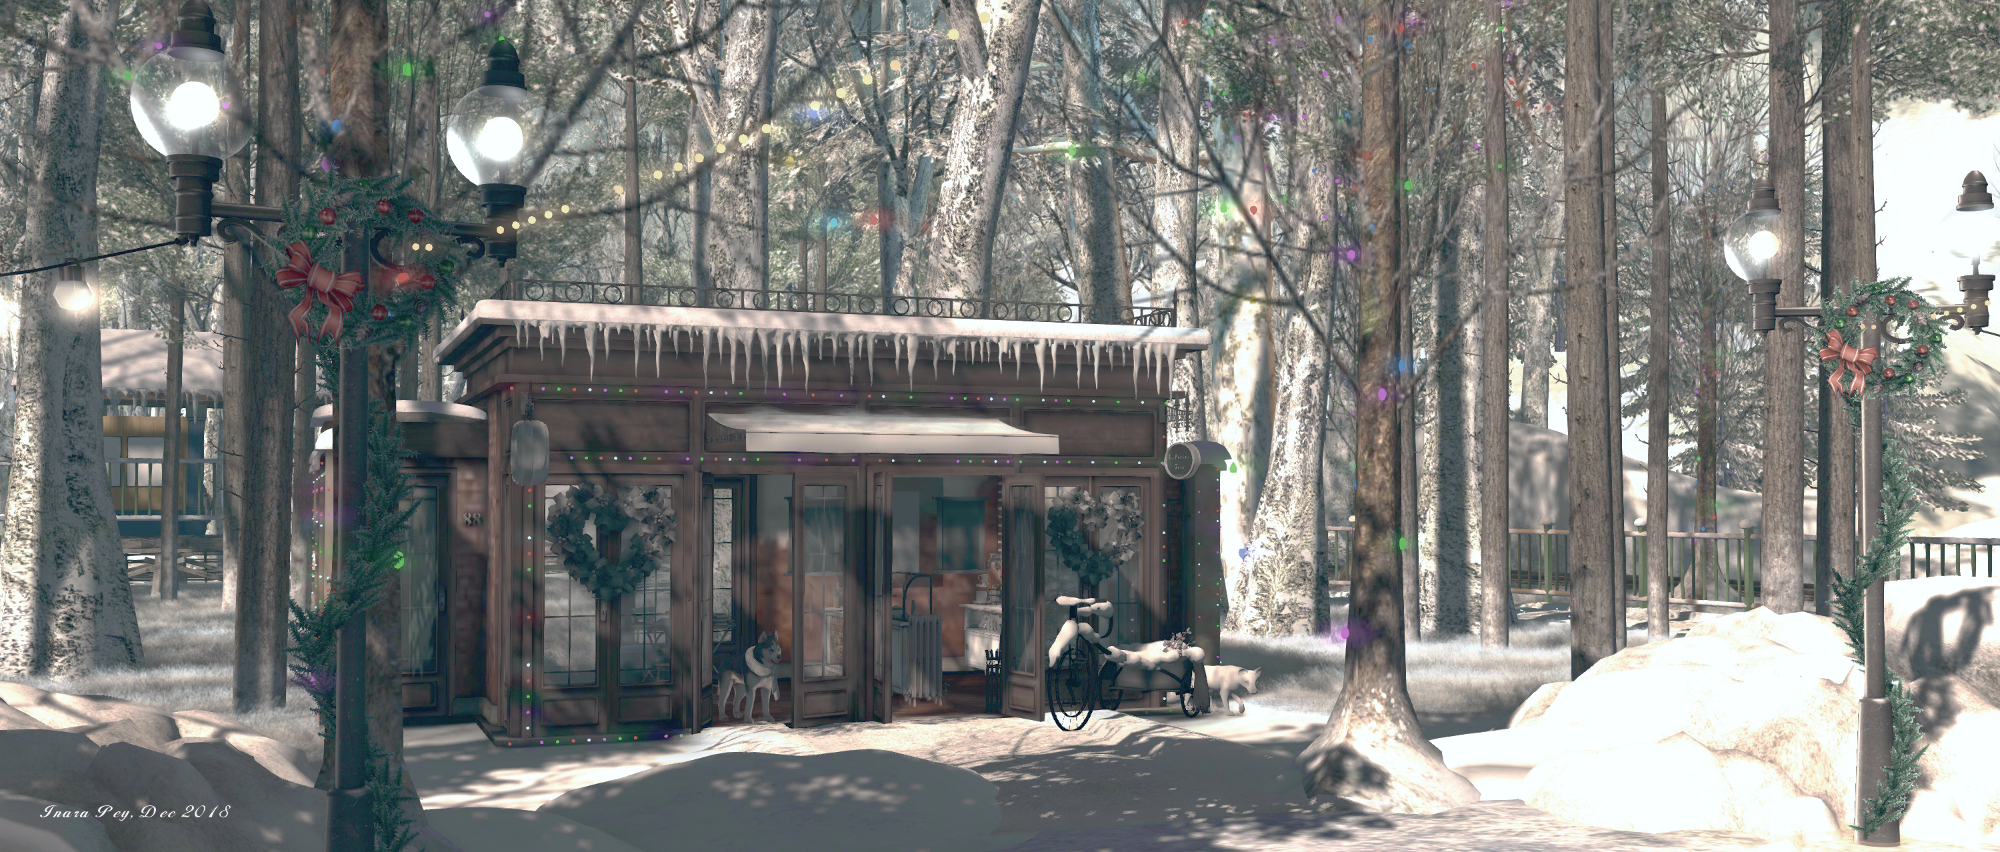 The Forest - Winter Wonderland; Inara Pey, December 2018, on Flickr